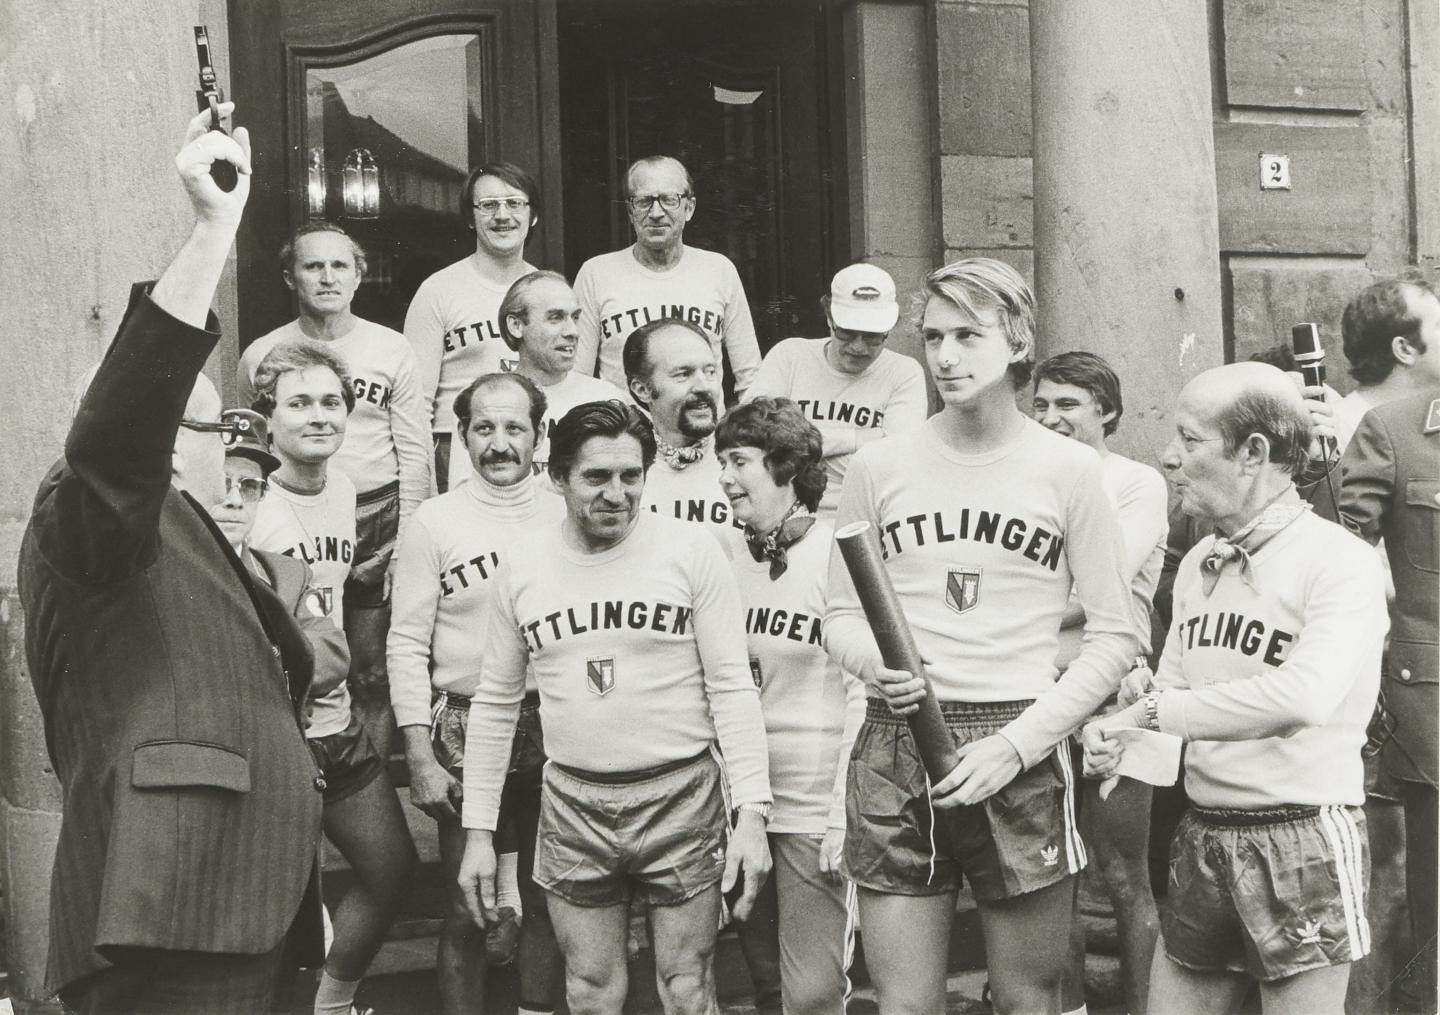 Gruppenaufnahme der Stafettenläufer während des Startschusses 1978